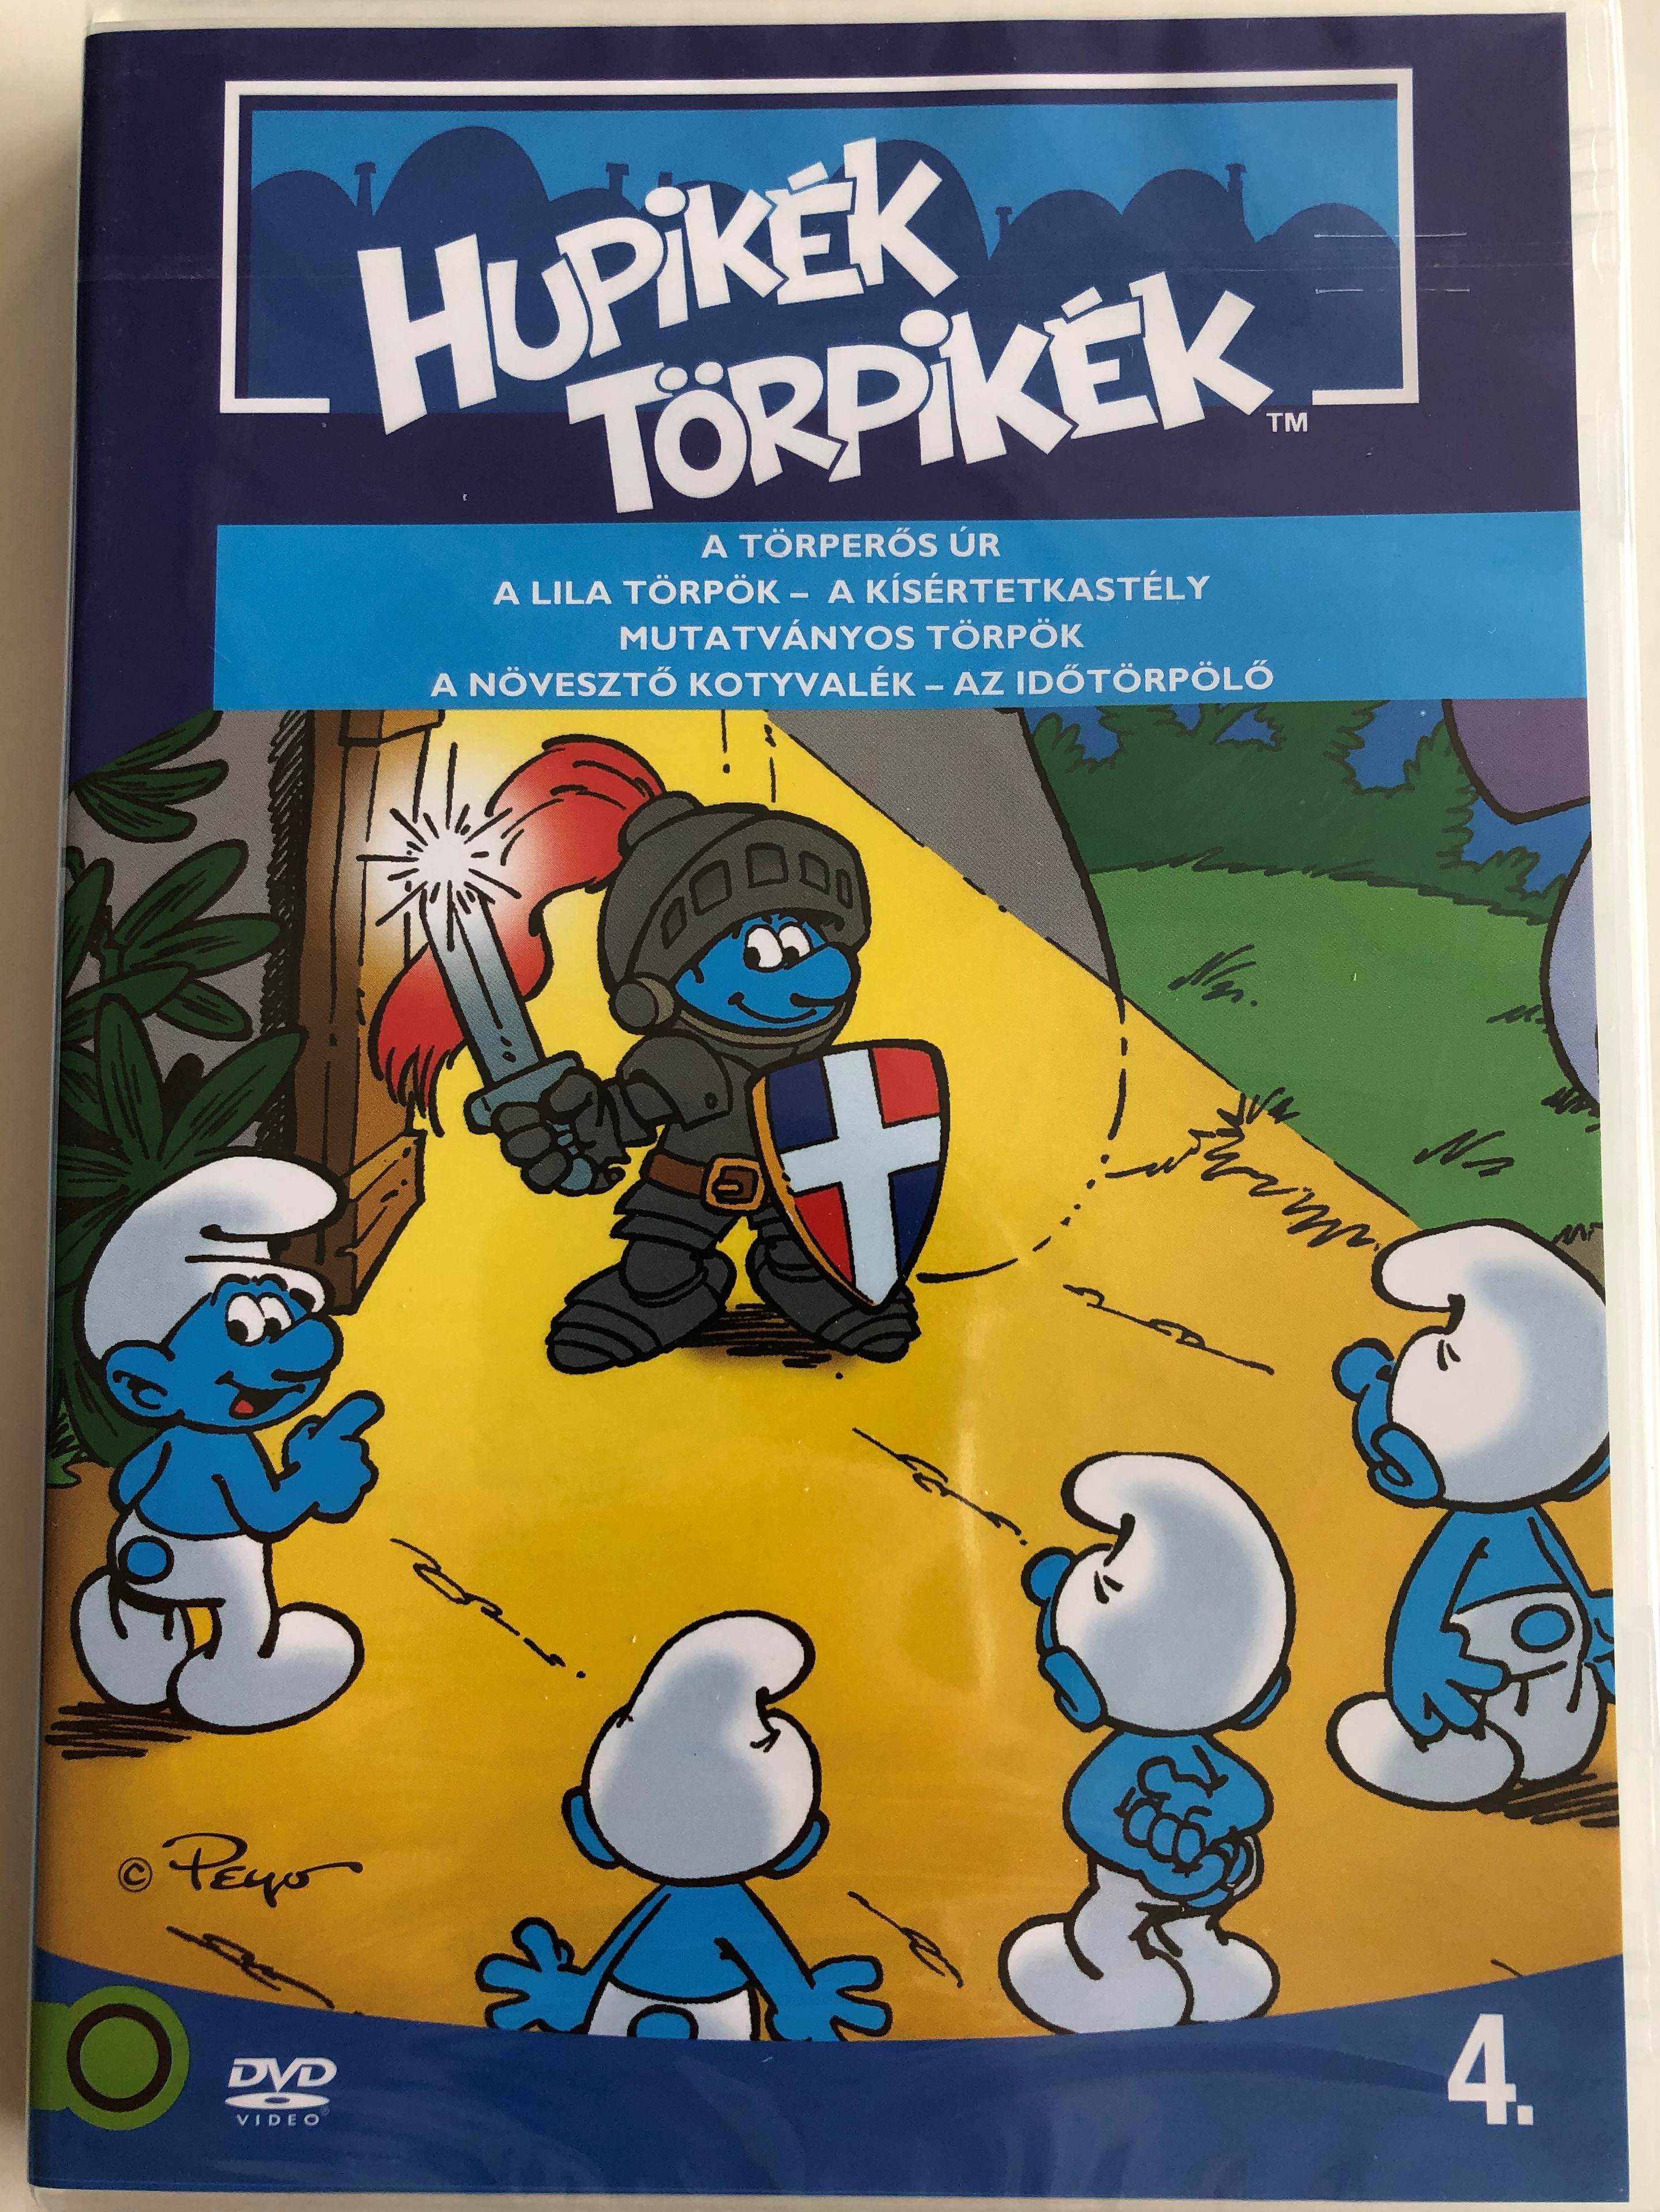 smurfs-4.-dvd-1982-hupik-k-t-rpik-k-4.-season-2-1.jpg